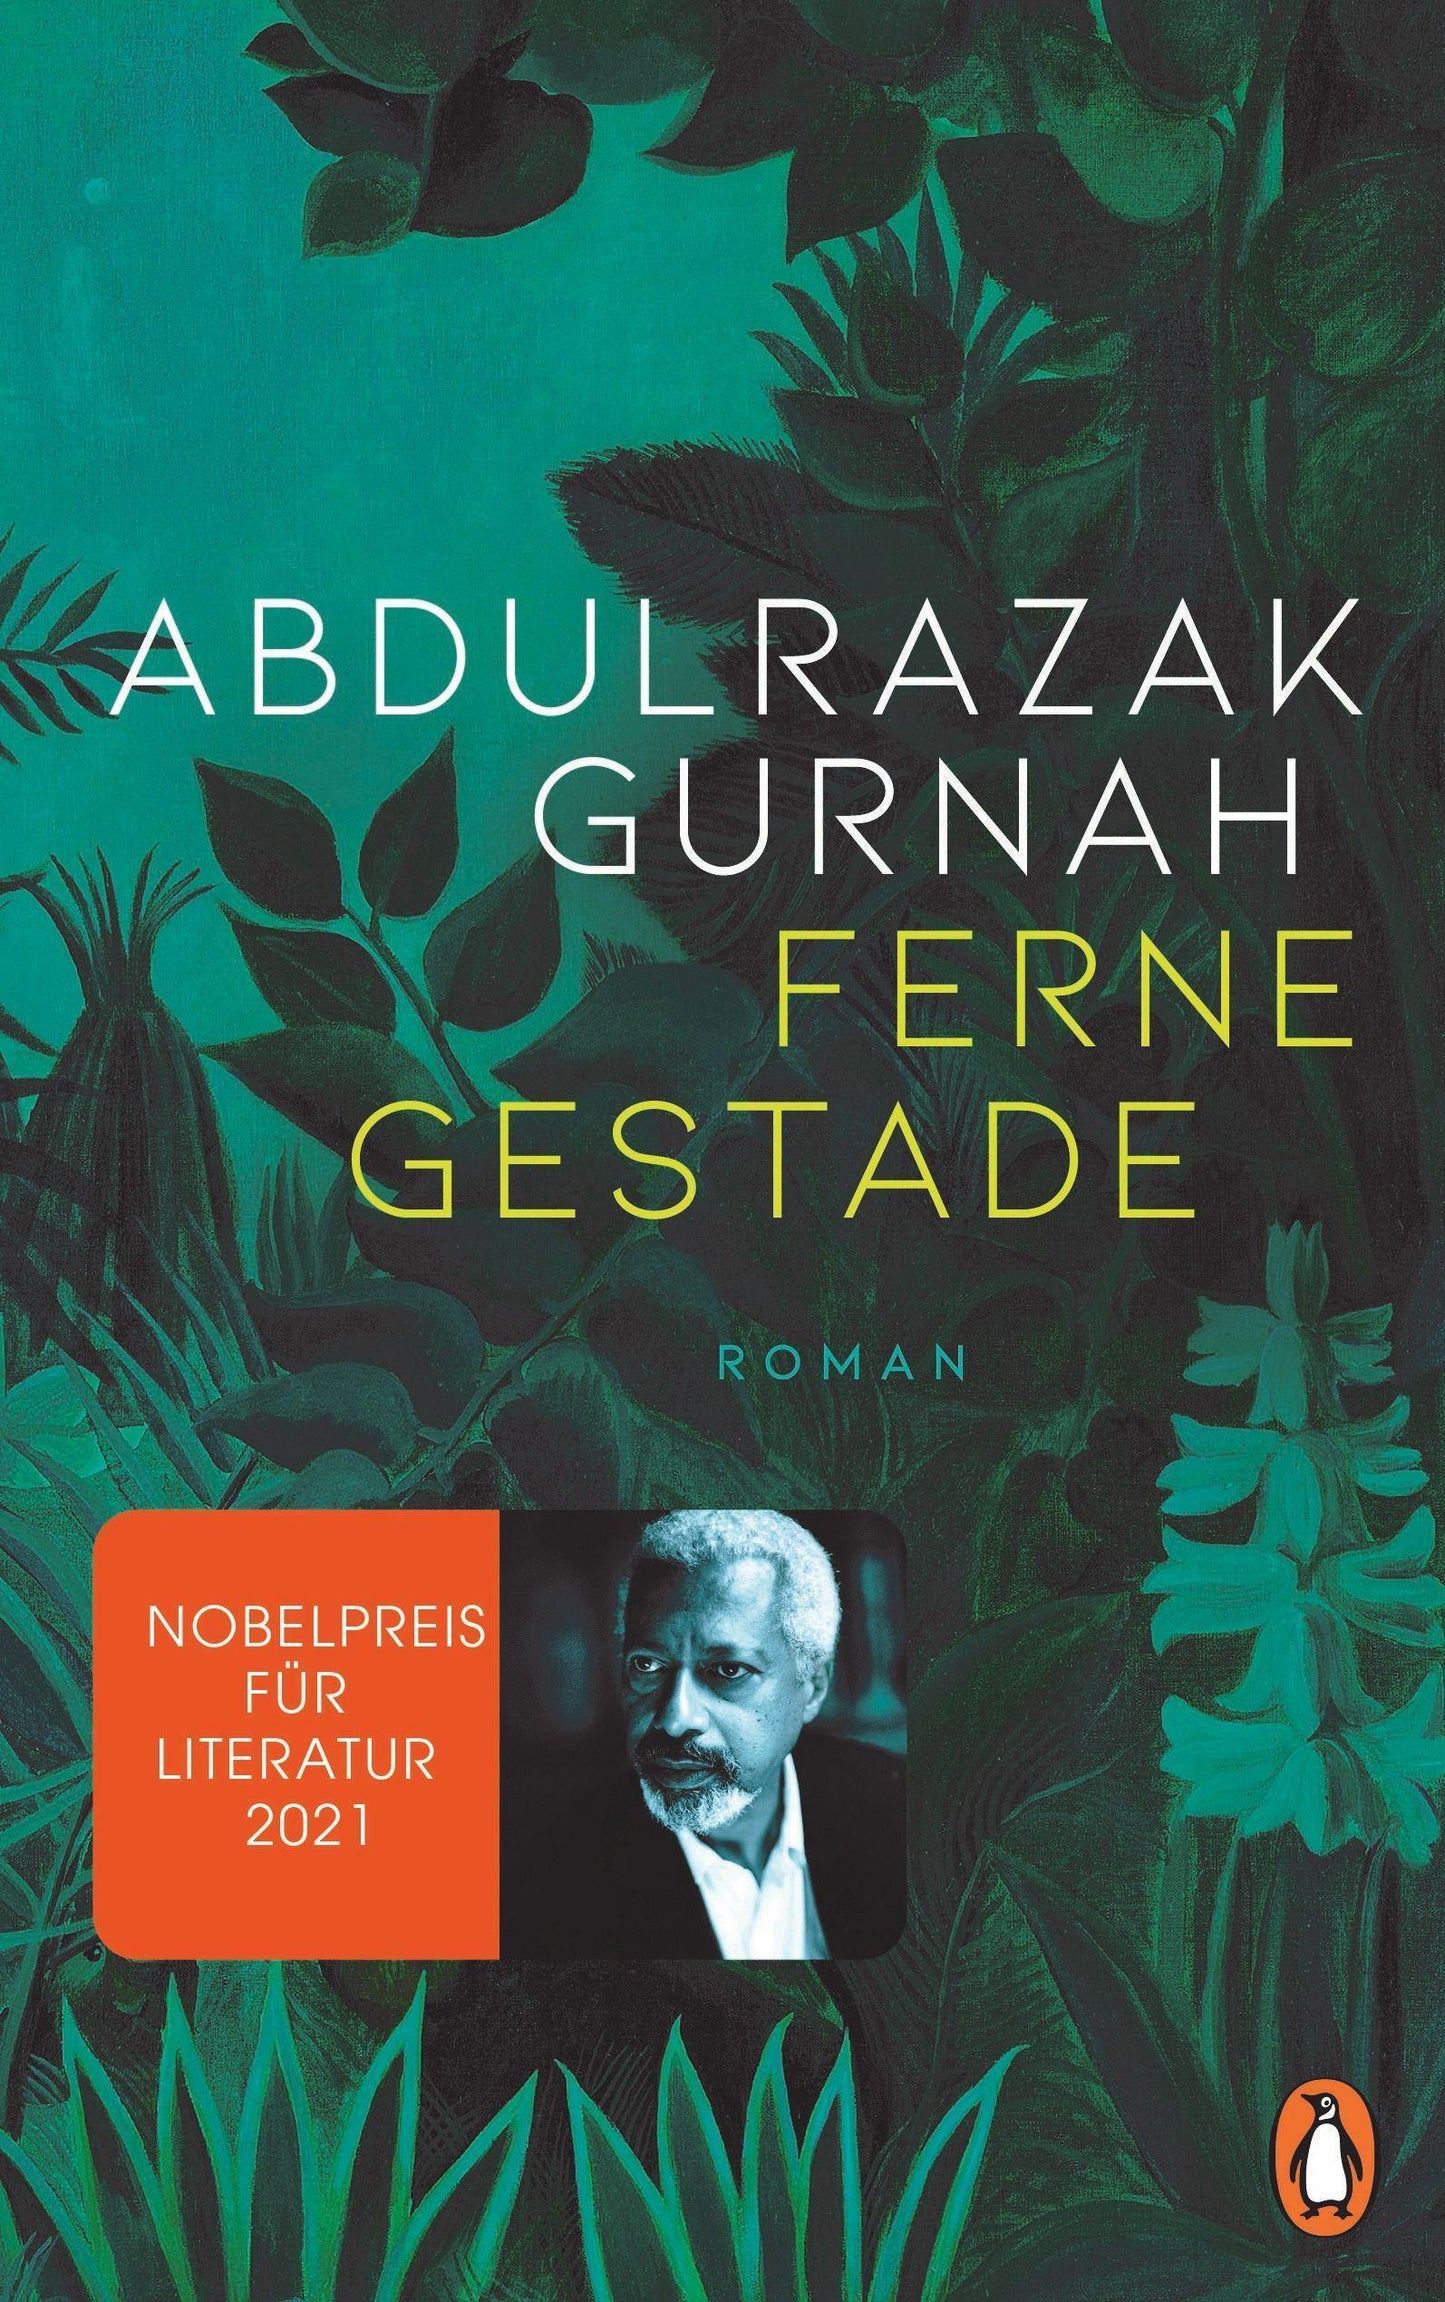 Ferne Gestade: Roman. Nobelpreis für Literatur 2021